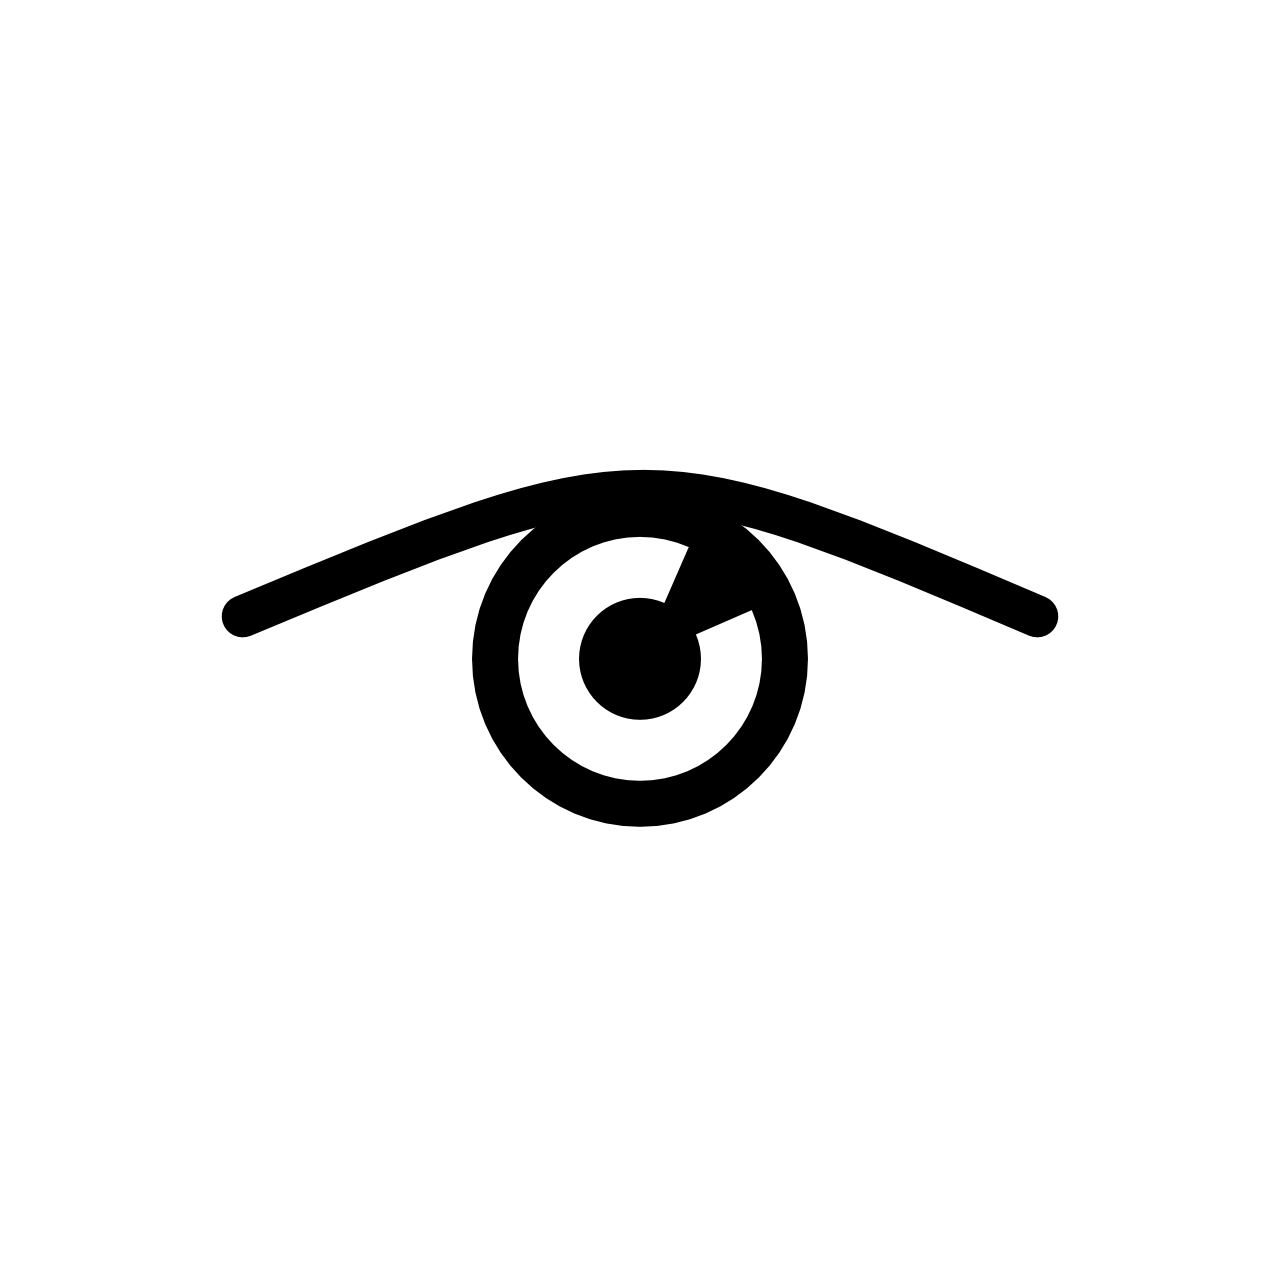 Logodesign Layout Logo Eye Target